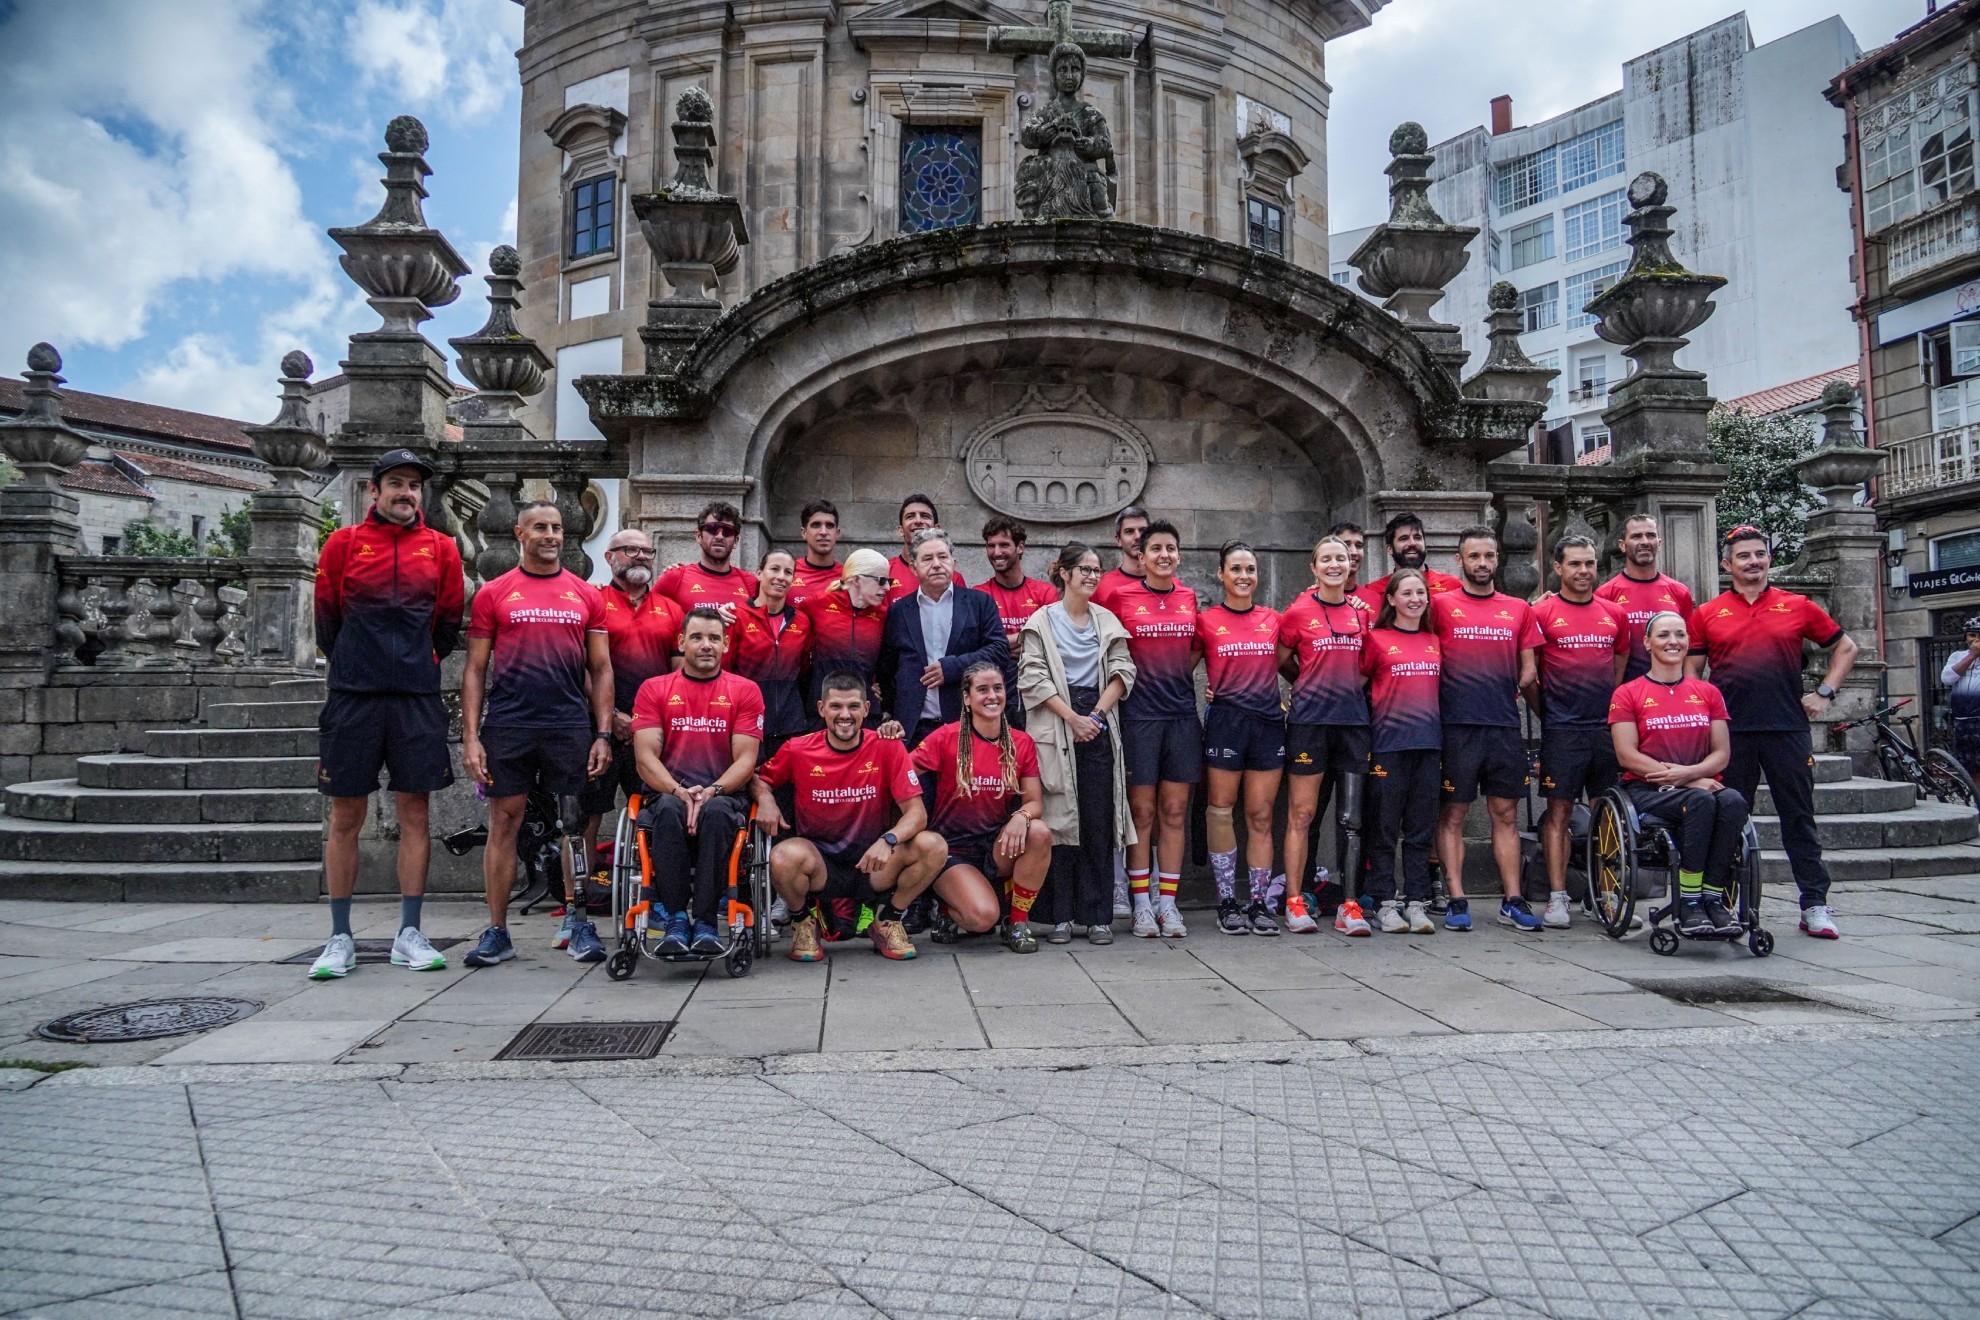 El equipo español que va a participar en la Gran Final de las Series Mundiales de triatlón posa en Pontevedra.